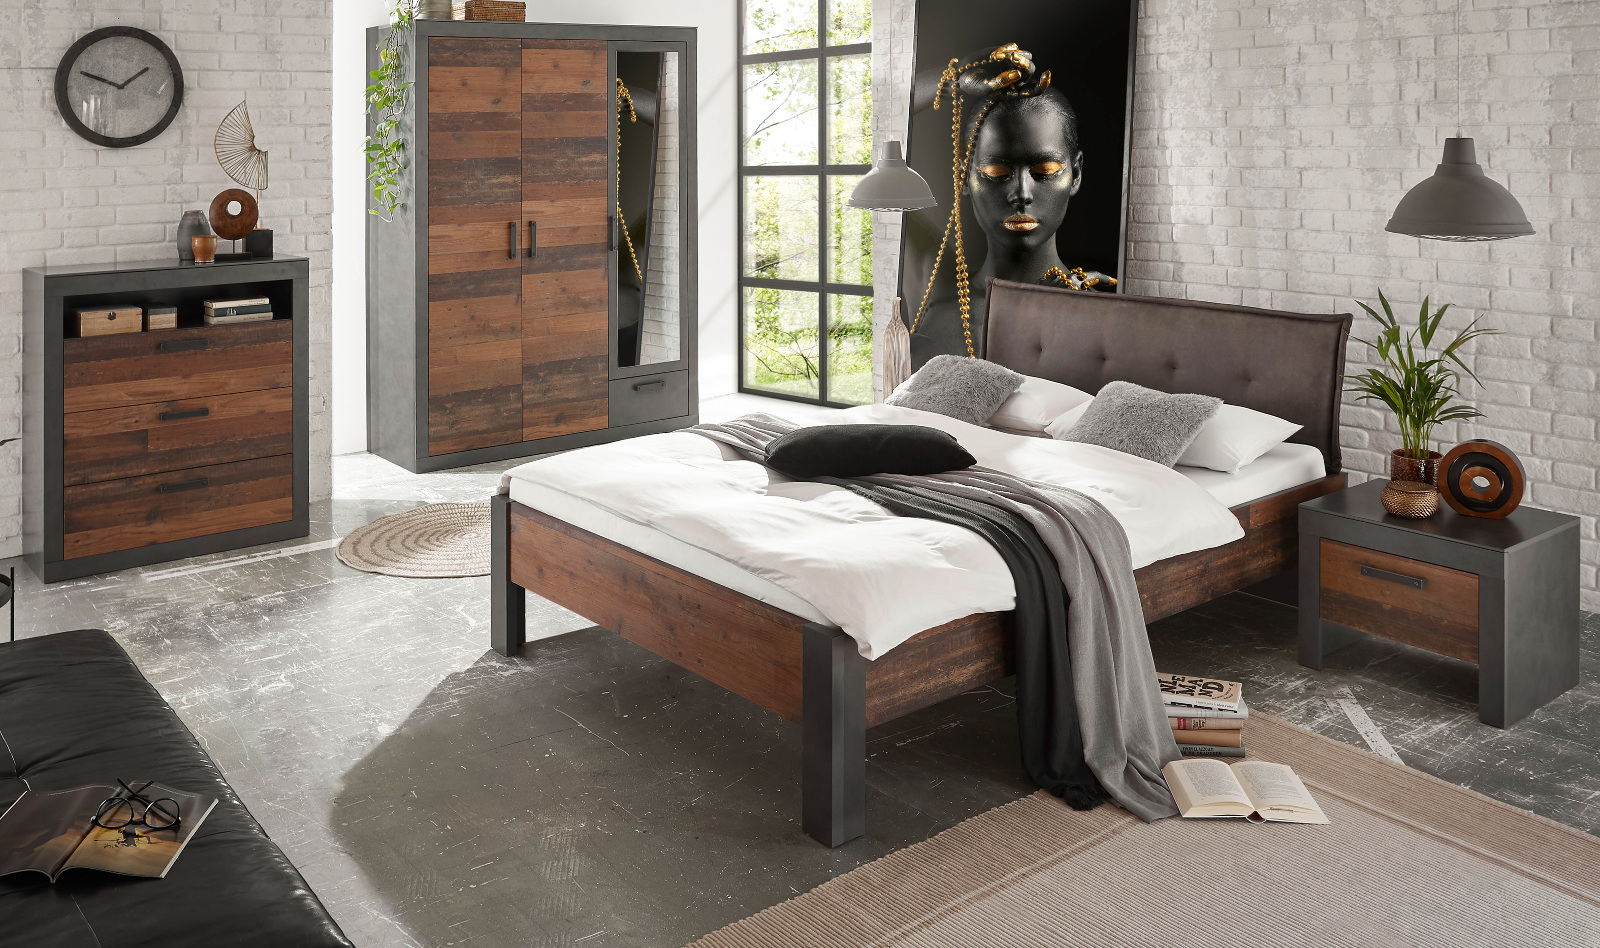 Schlafzimmer komplett "Ward" in Old Used Wood Shabby Design mit Matera grau Komplettzimmer mit Bett, Kleiderschrank, Kommode und Nachttisch